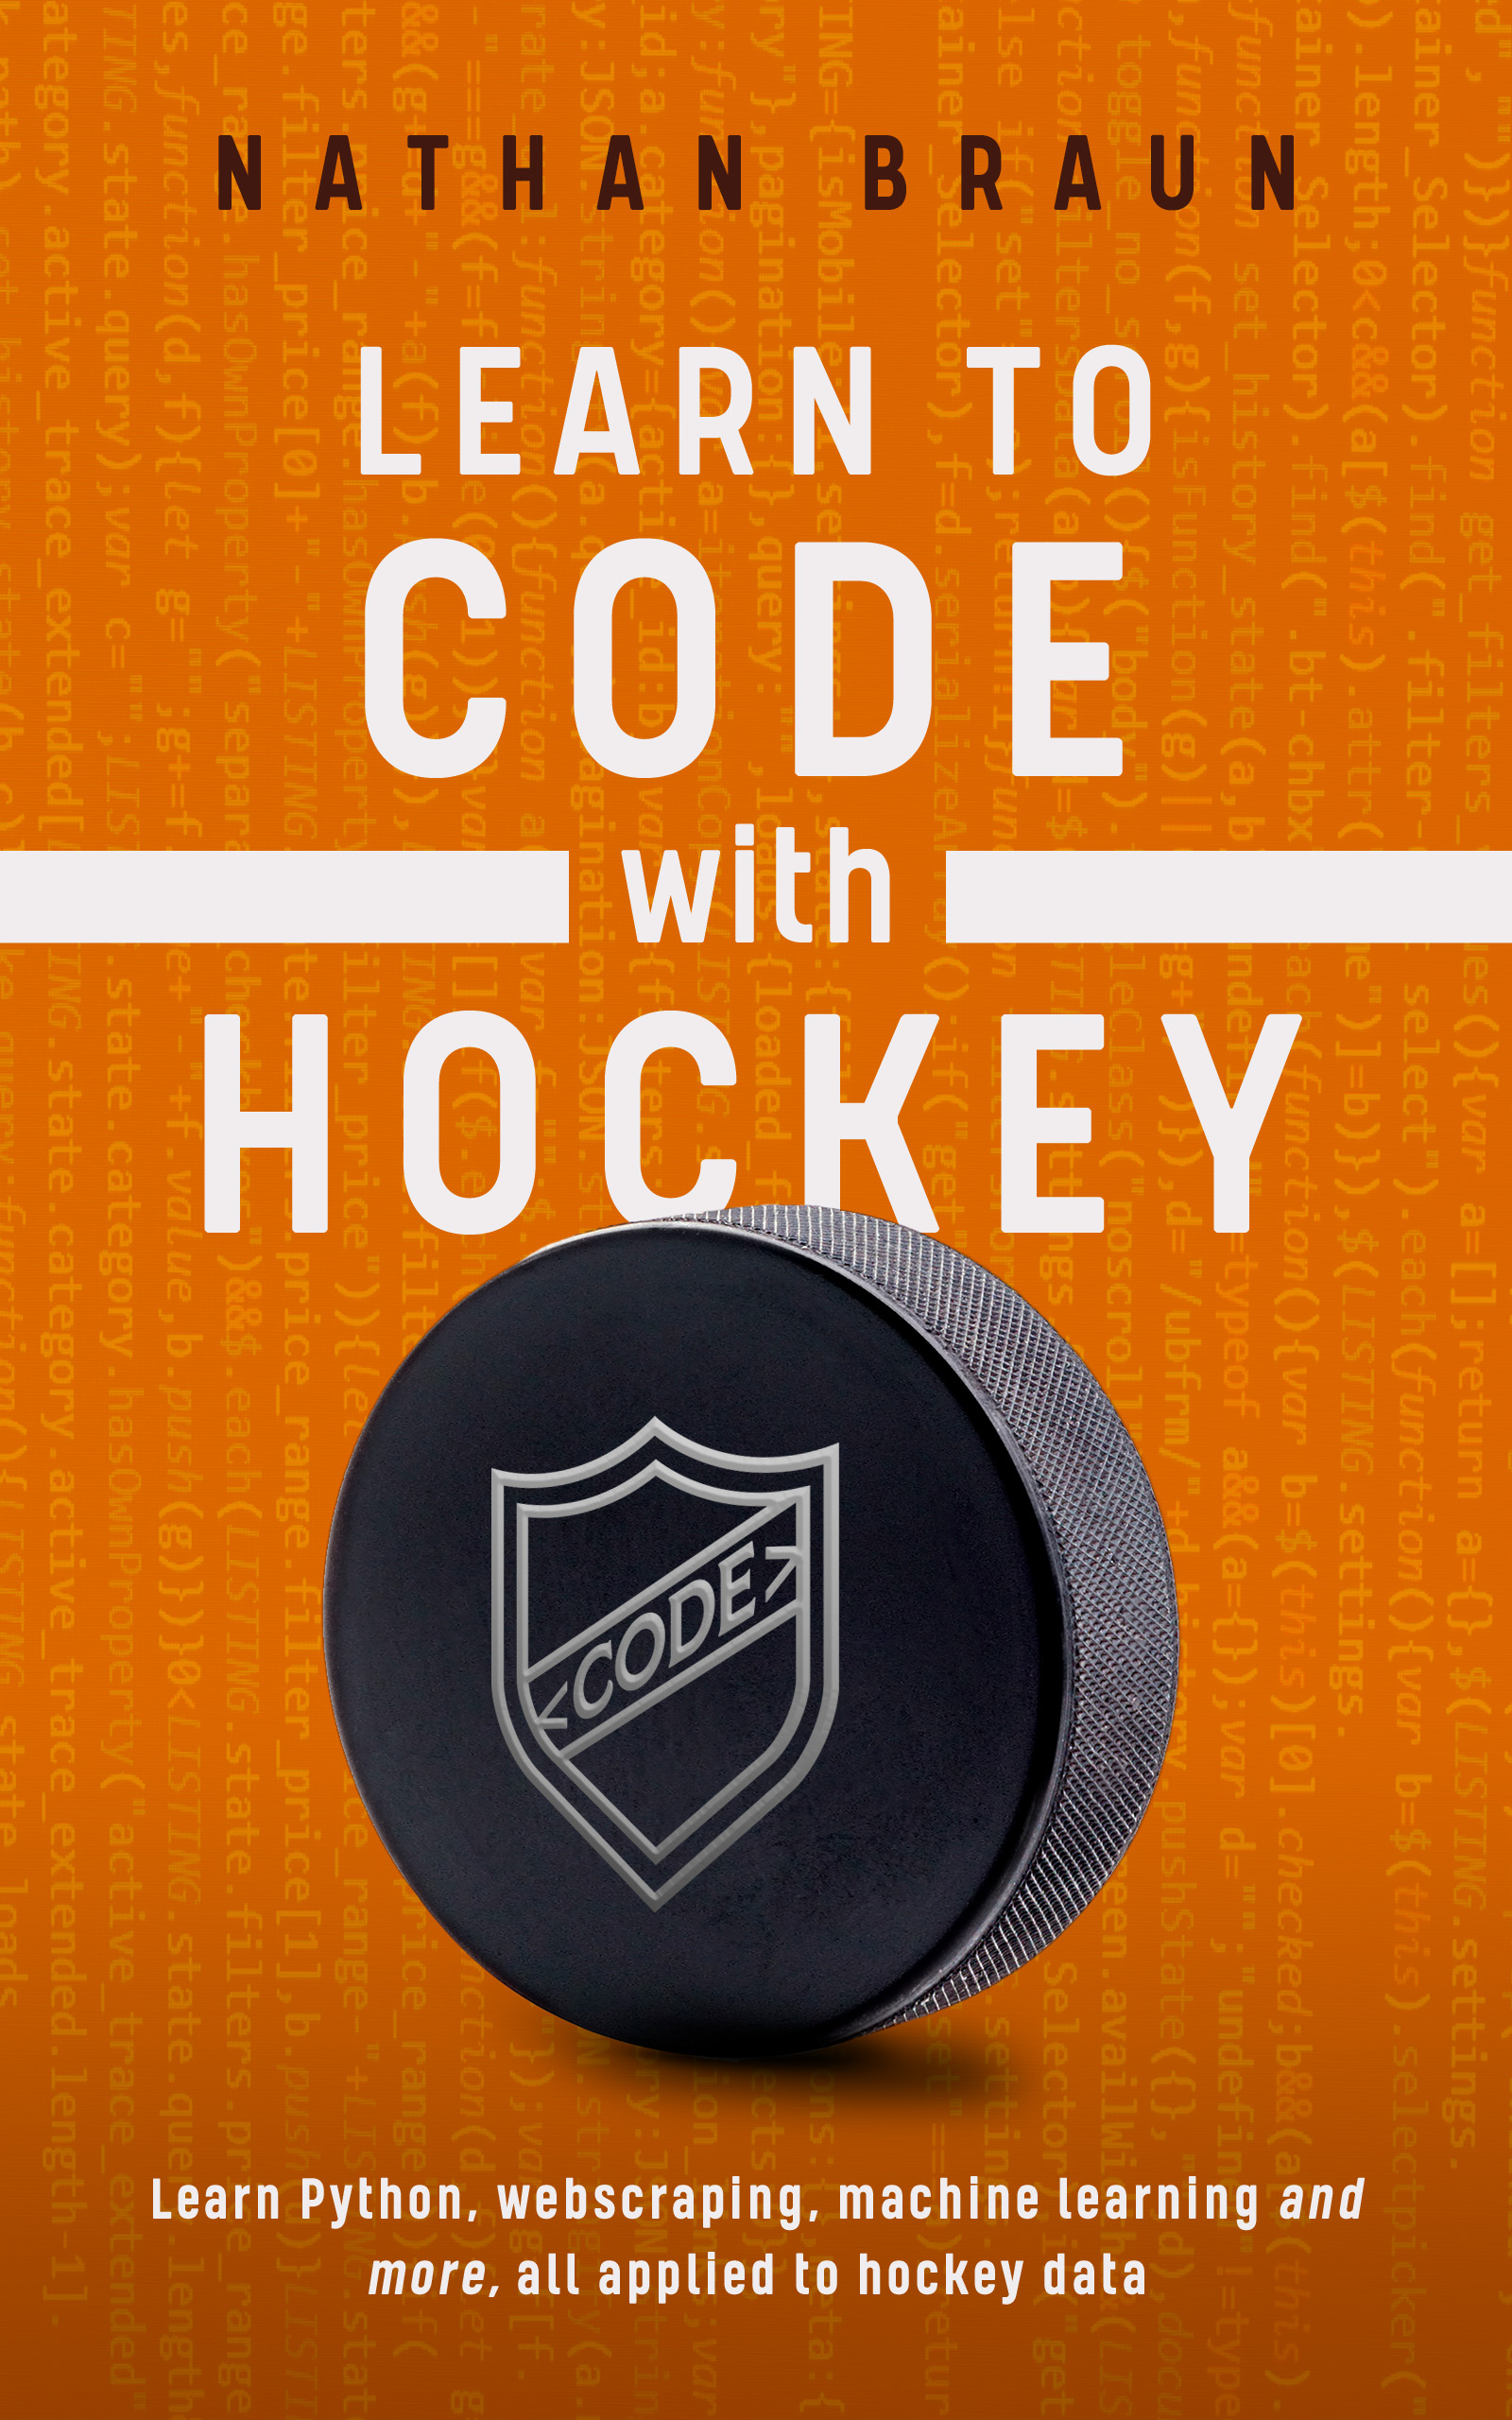 www.codewithhockey.com